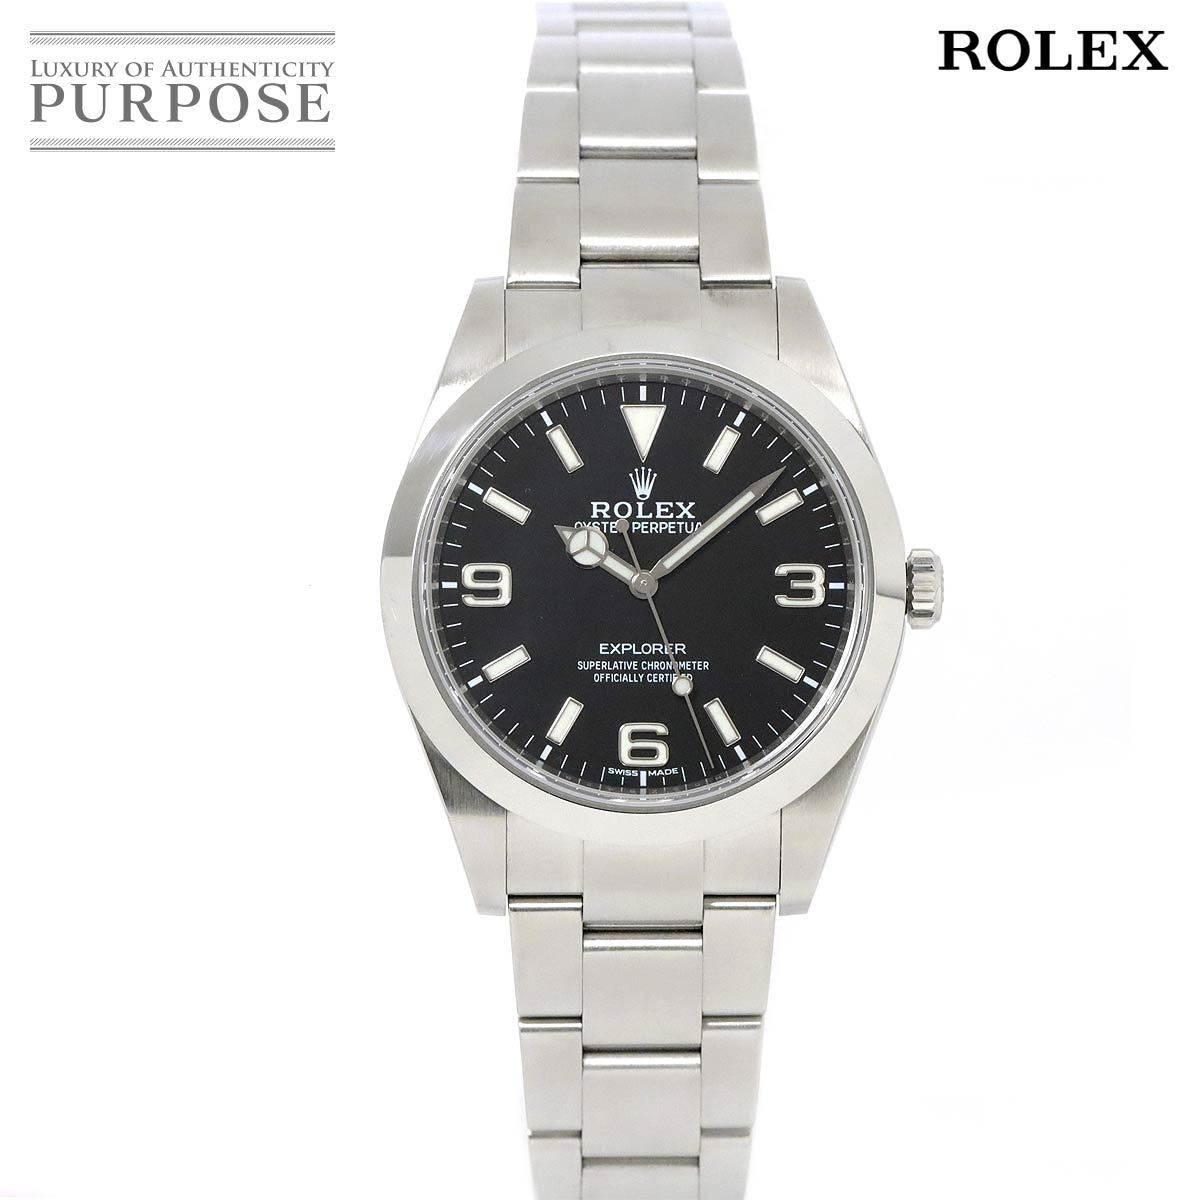 ロレックス ROLEX エクスプローラ1 214270 ランダム ルーレット メンズ 腕時計 ブラック 文字盤 自動巻き ウォッチ Explorer I 90196814